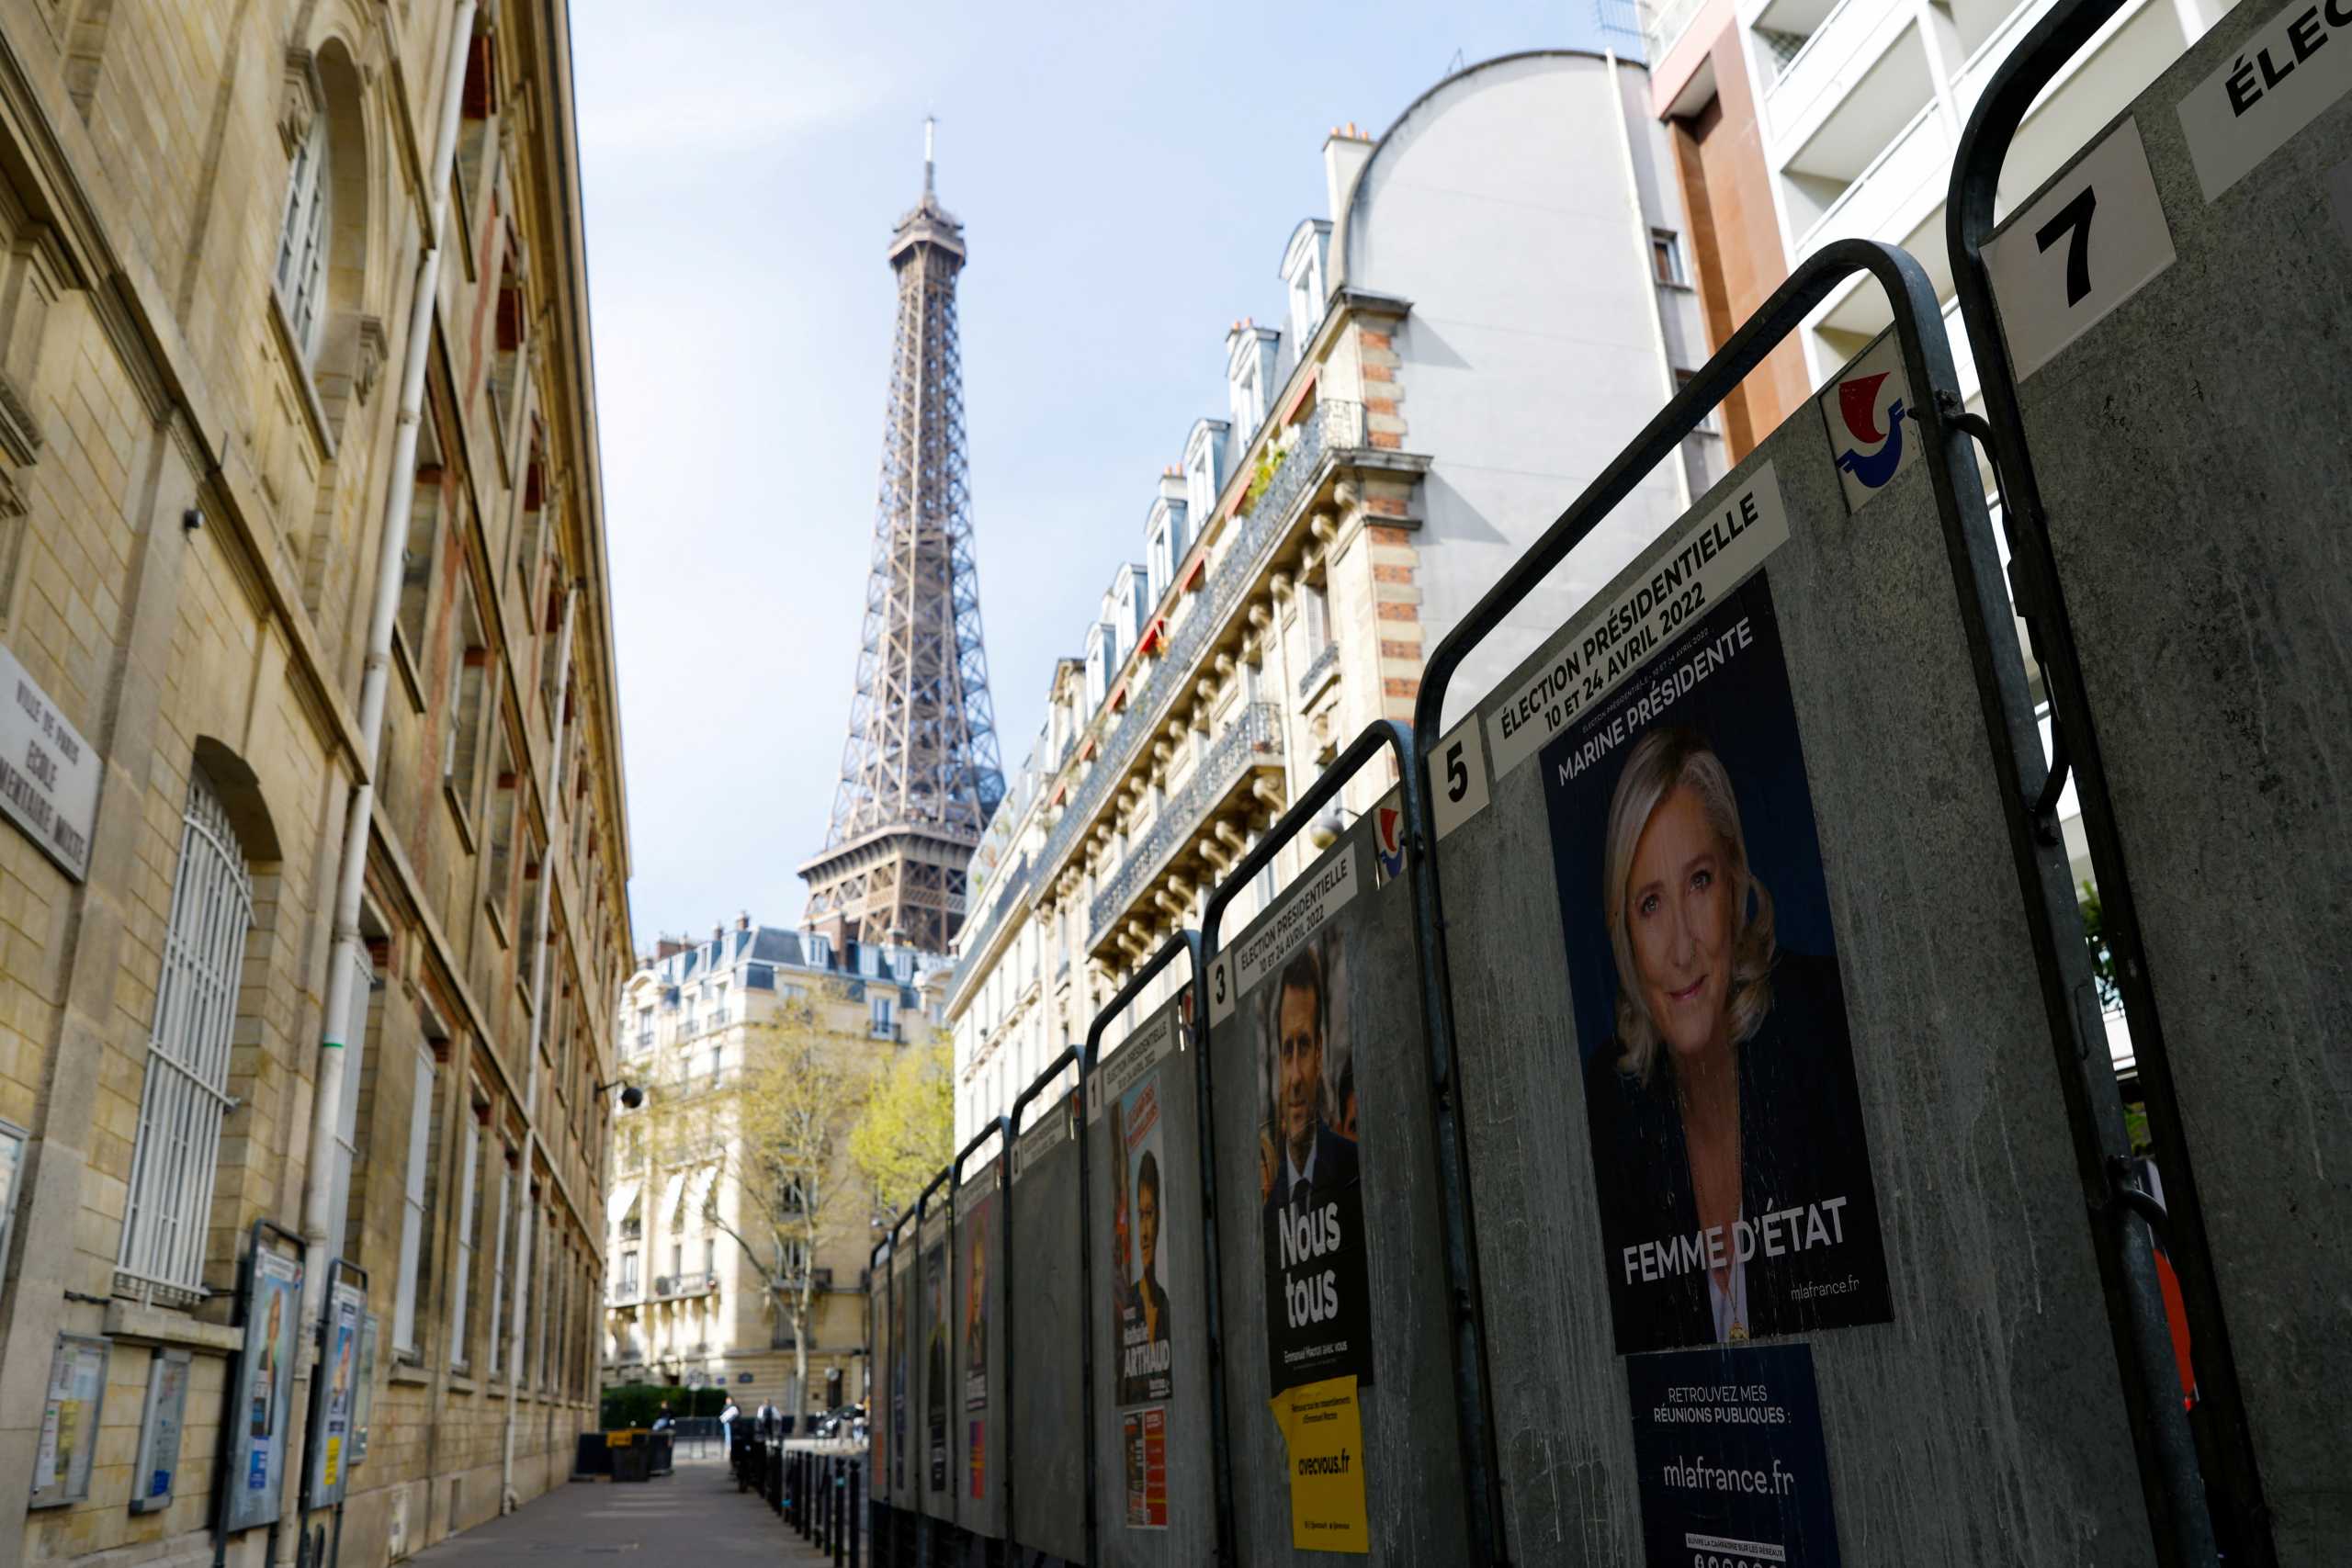 Προεδρικές εκλογές στη Γαλλία: Εμανουέλ Μακρόν, Μαρίν Λεπέν και ακόμη τρεις βασικοί διεκδικητές – Το πρόγραμμά τους